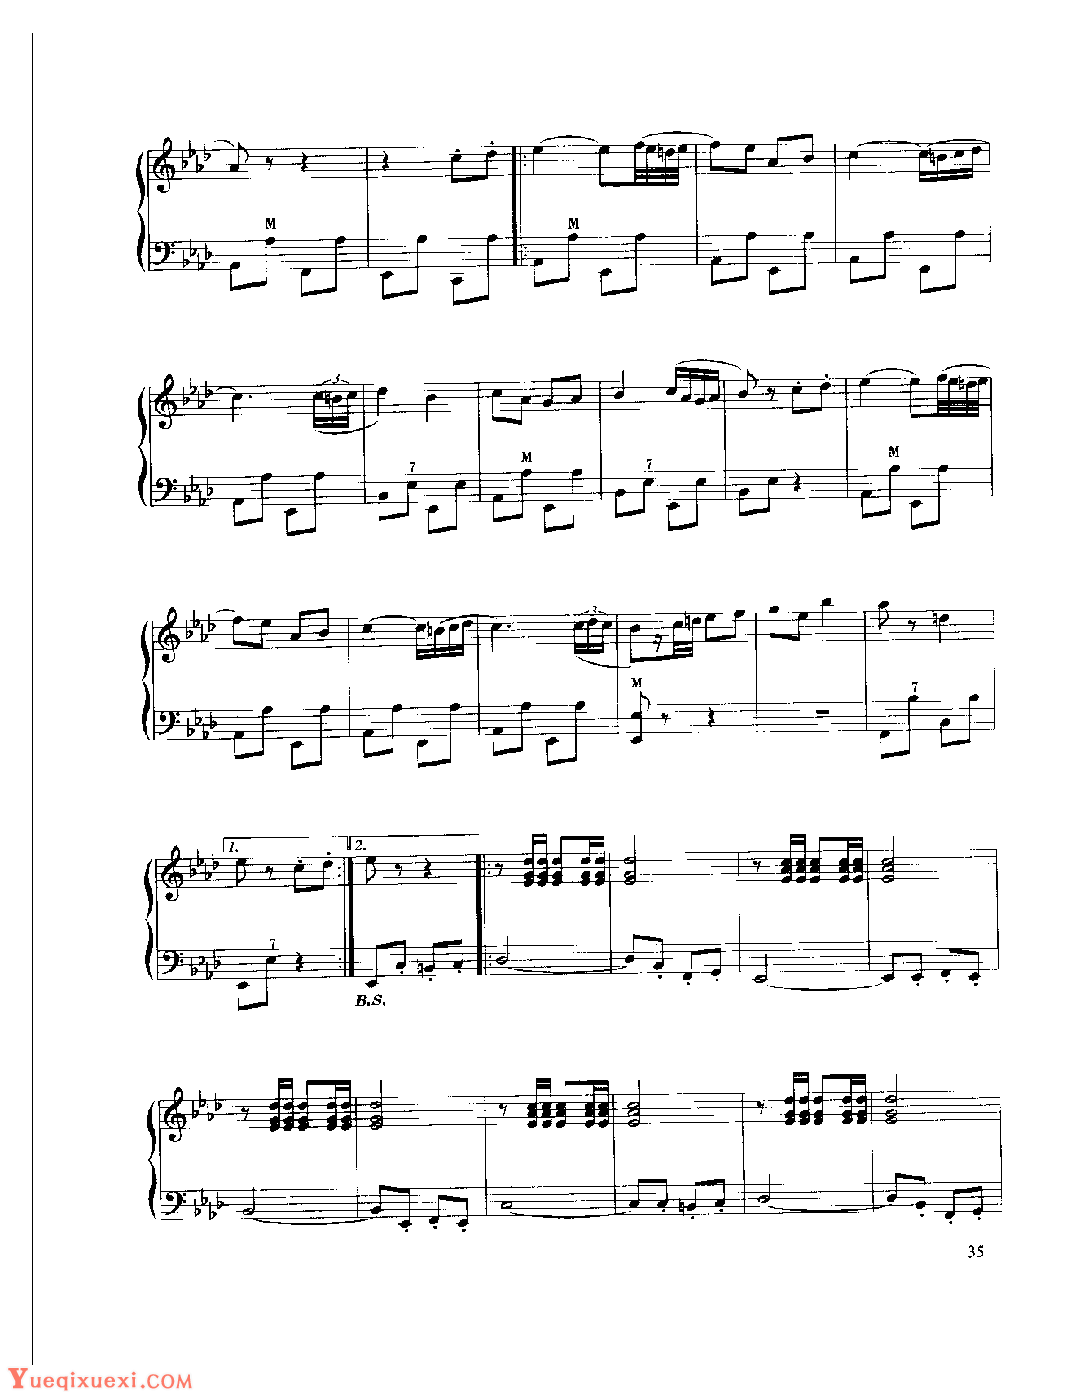 现代手风琴流行乐曲《色菲尔蒂兹进行曲》[法]狄·维维尼曲